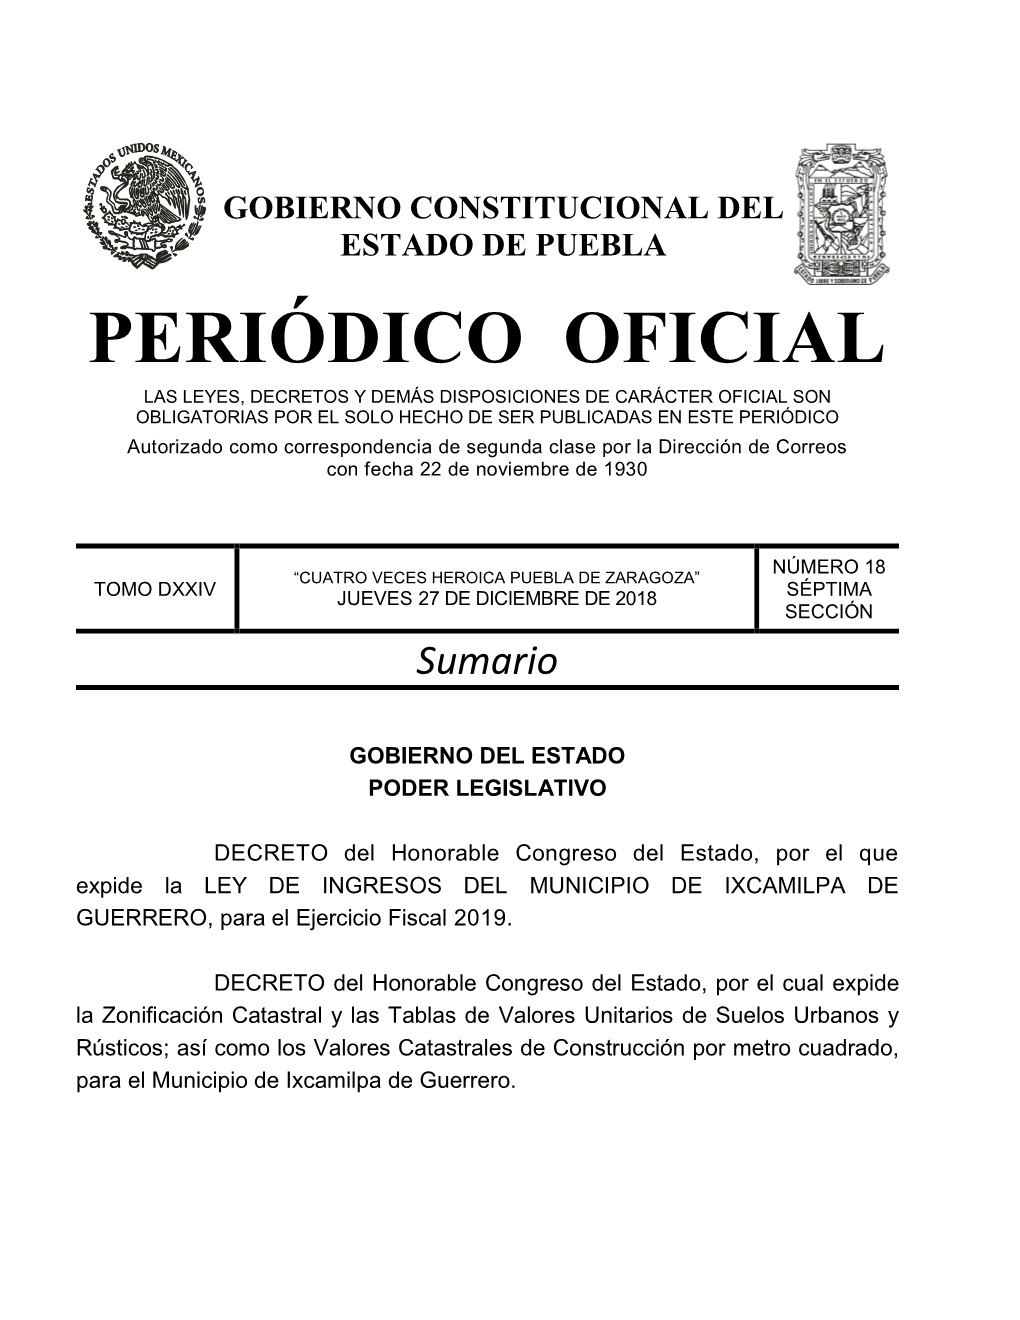 LEY DE INGRESOS DEL MUNICIPIO DE IXCAMILPA DE GUERRERO, Para El Ejercicio Fiscal 2019